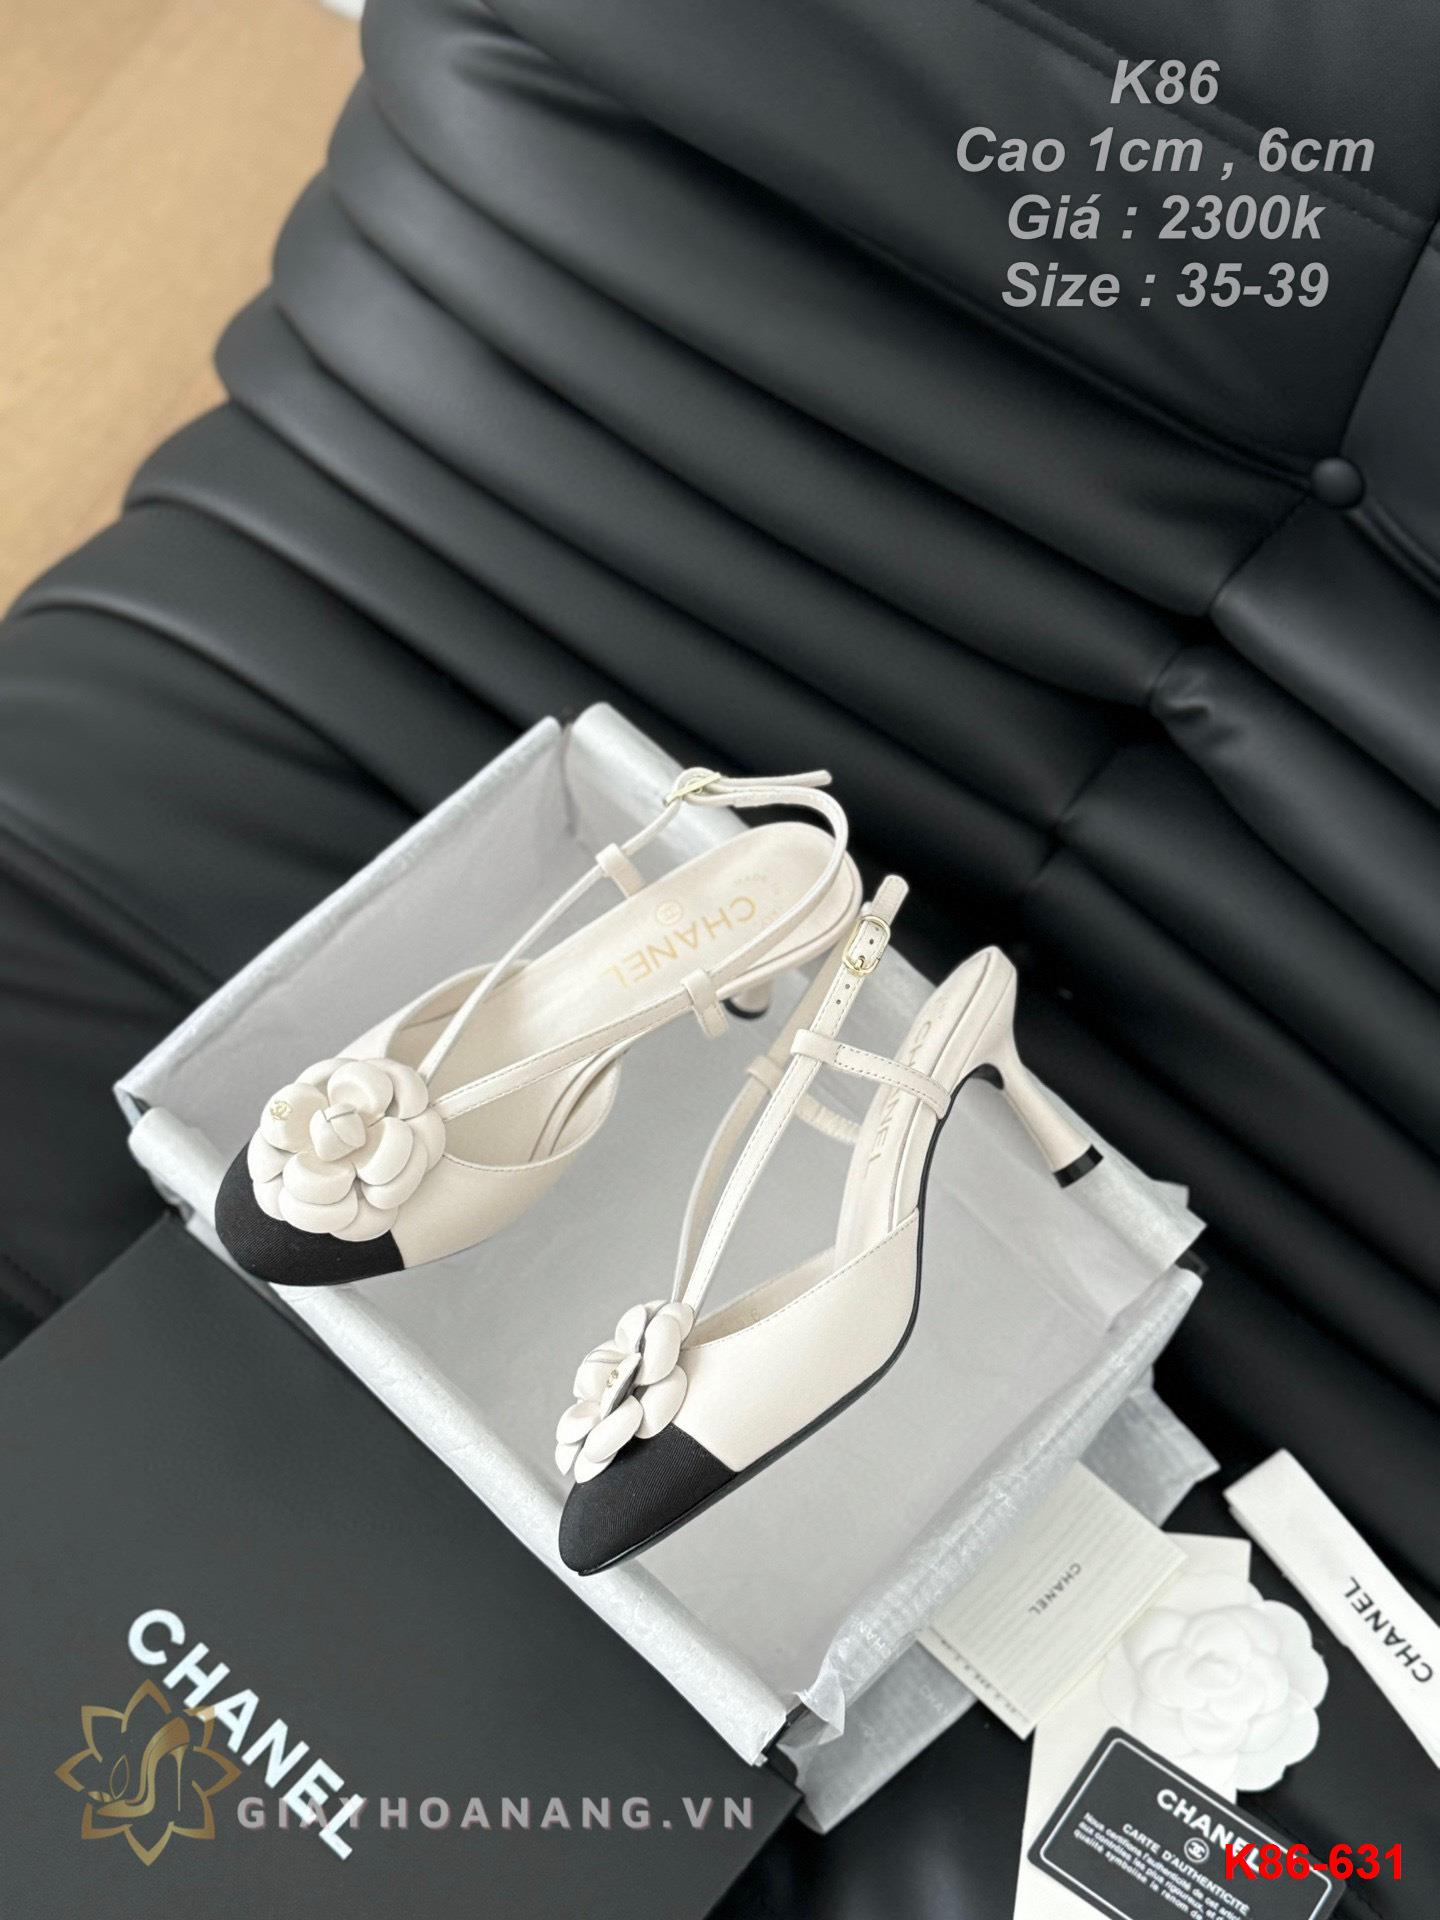 K86-631 Chanel sandal cao gót 1cm , 6cm siêu cấp